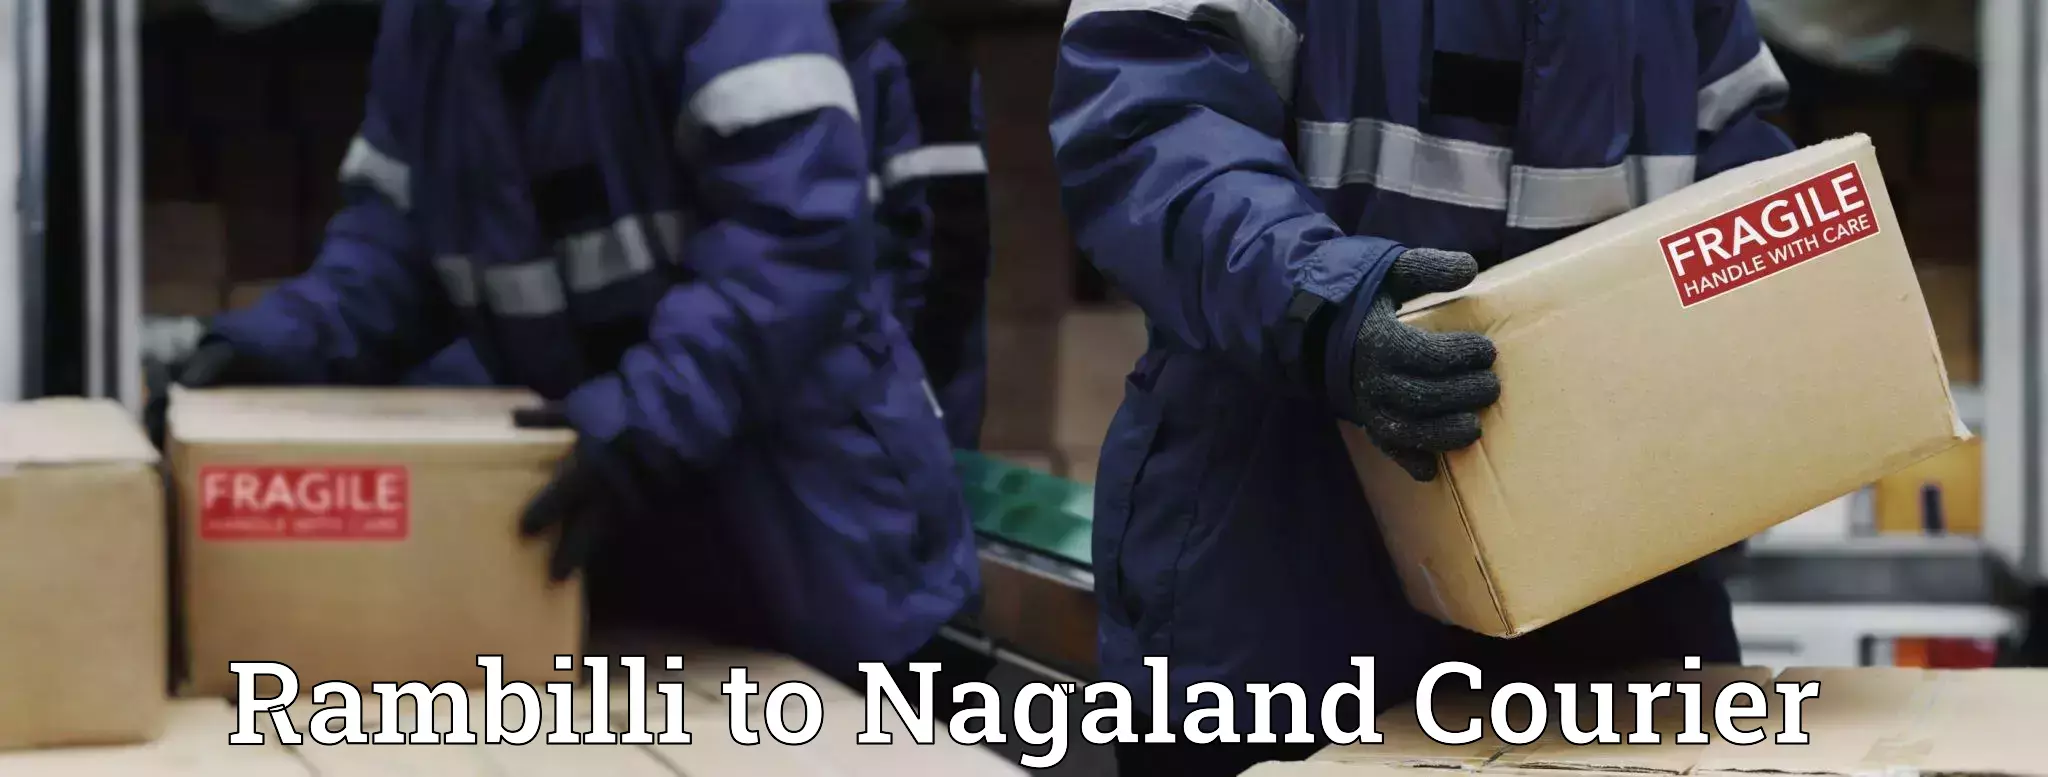 Door-to-door freight service Rambilli to NIT Nagaland